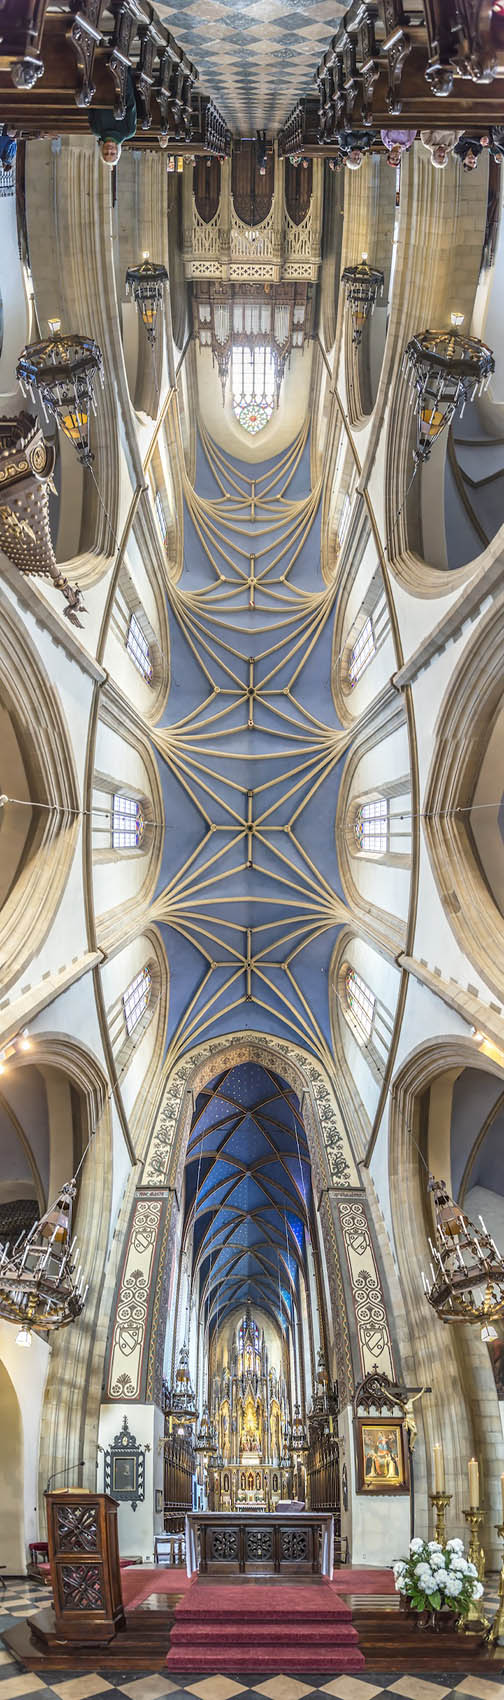 تصاویر پانورامای بسیار زیبا از کلیساهای سرتاسر دنیا + تصاویر